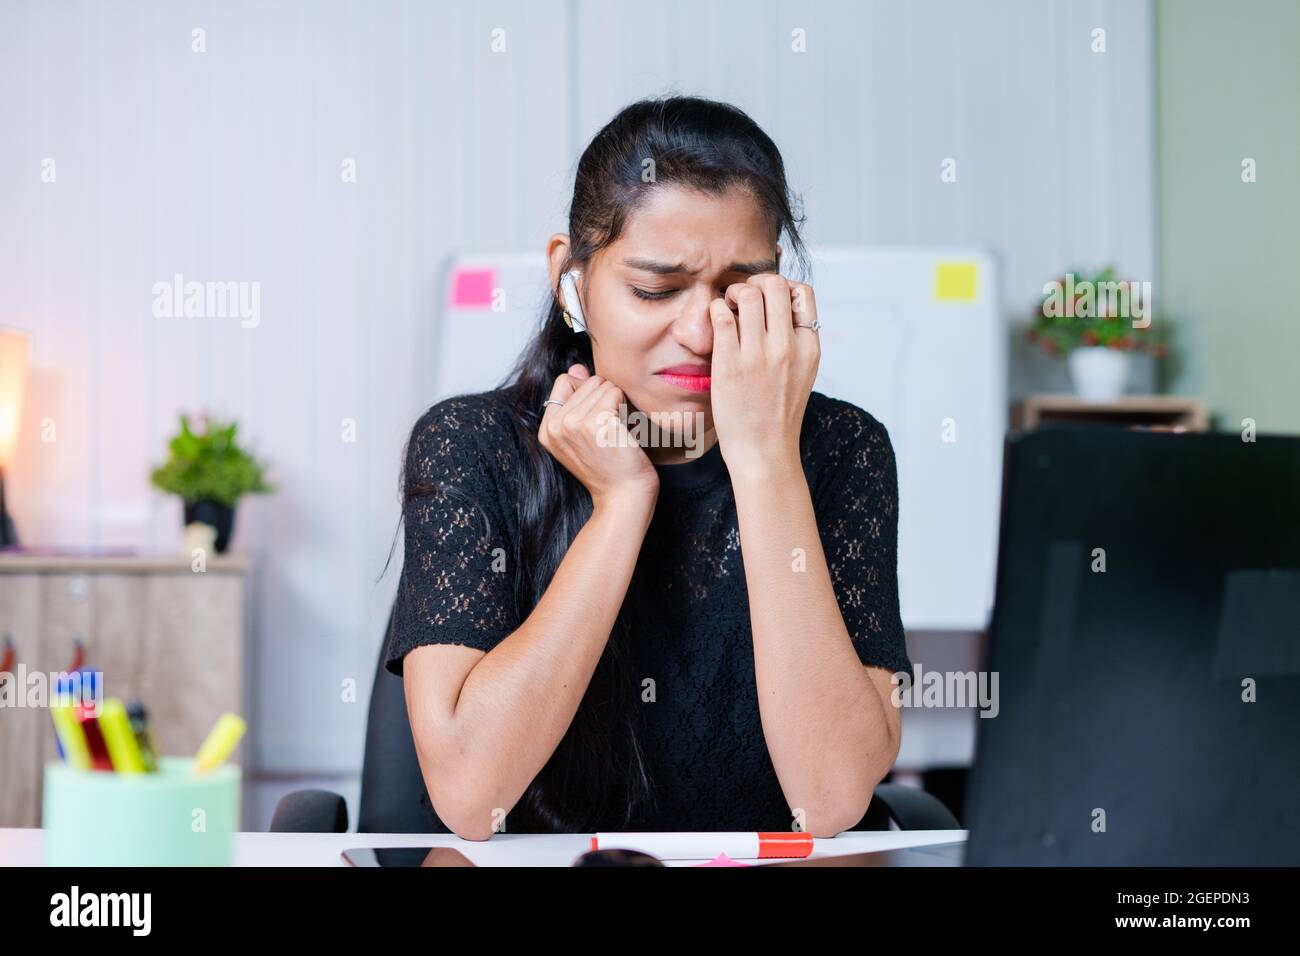 colpo medio di frustrata triste piangendo giovane donna indiana sul posto di lavoro - concetto di stress emotivo, mentale o di lavoro in ufficio. Foto Stock